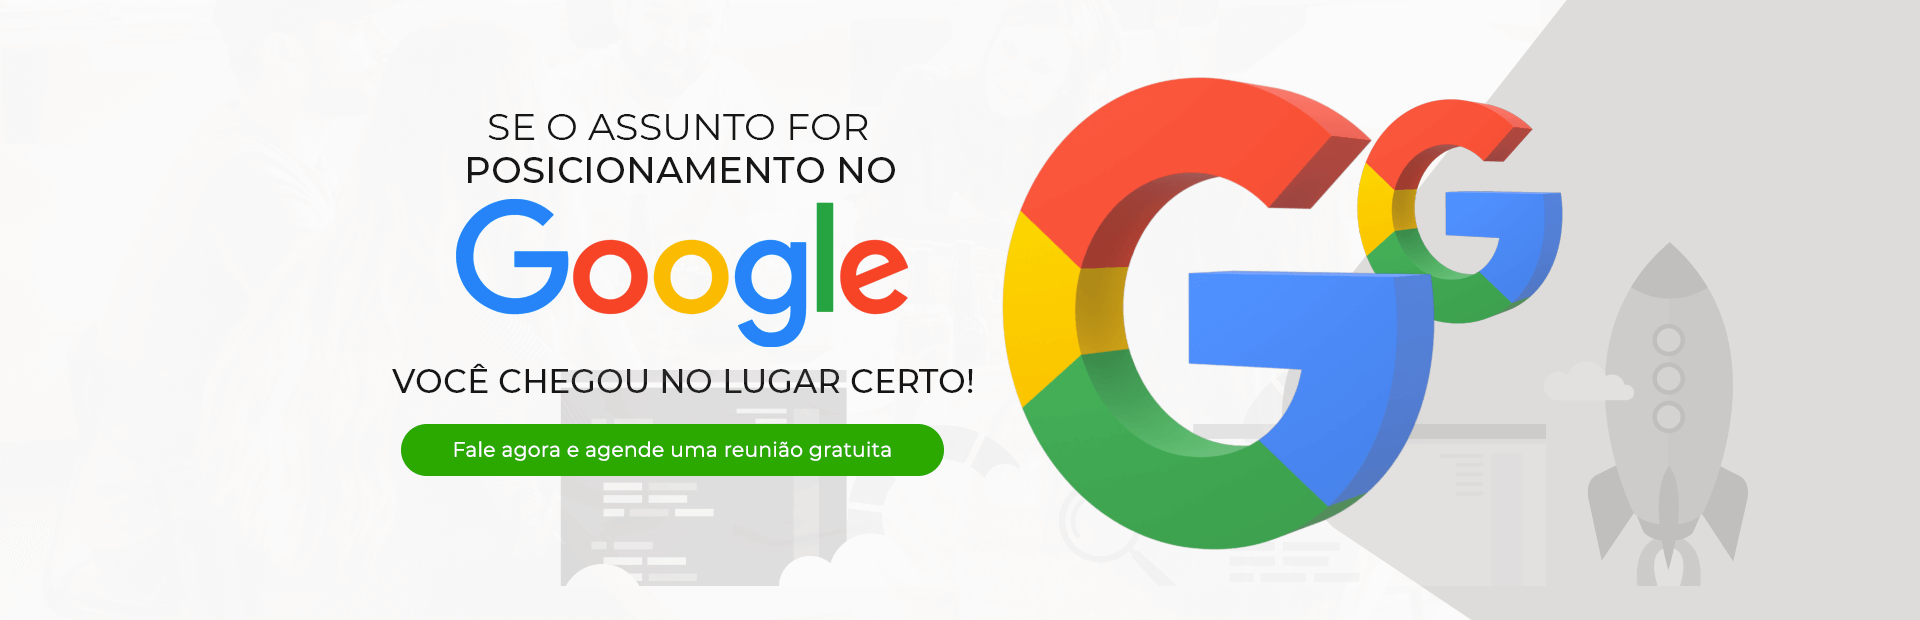 Posicionamento no Google - SEO Guarulhos